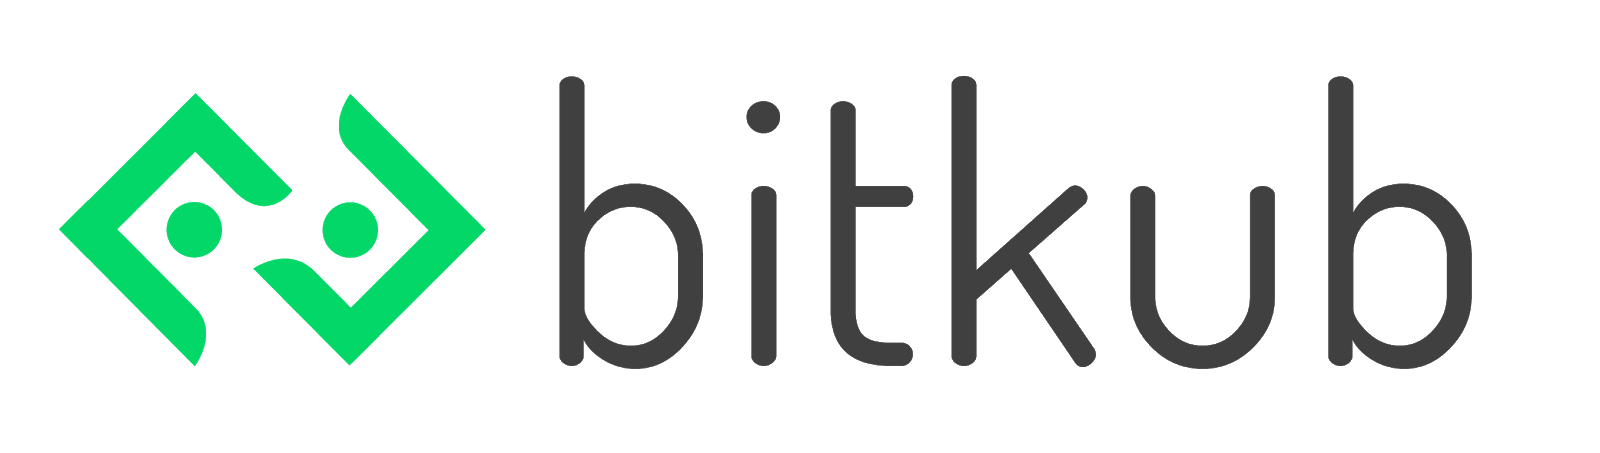 Bitkub™ - เปิดบัญชีออนไลน์ - วิธีสมัคร - เริ่มต้นที่นี่